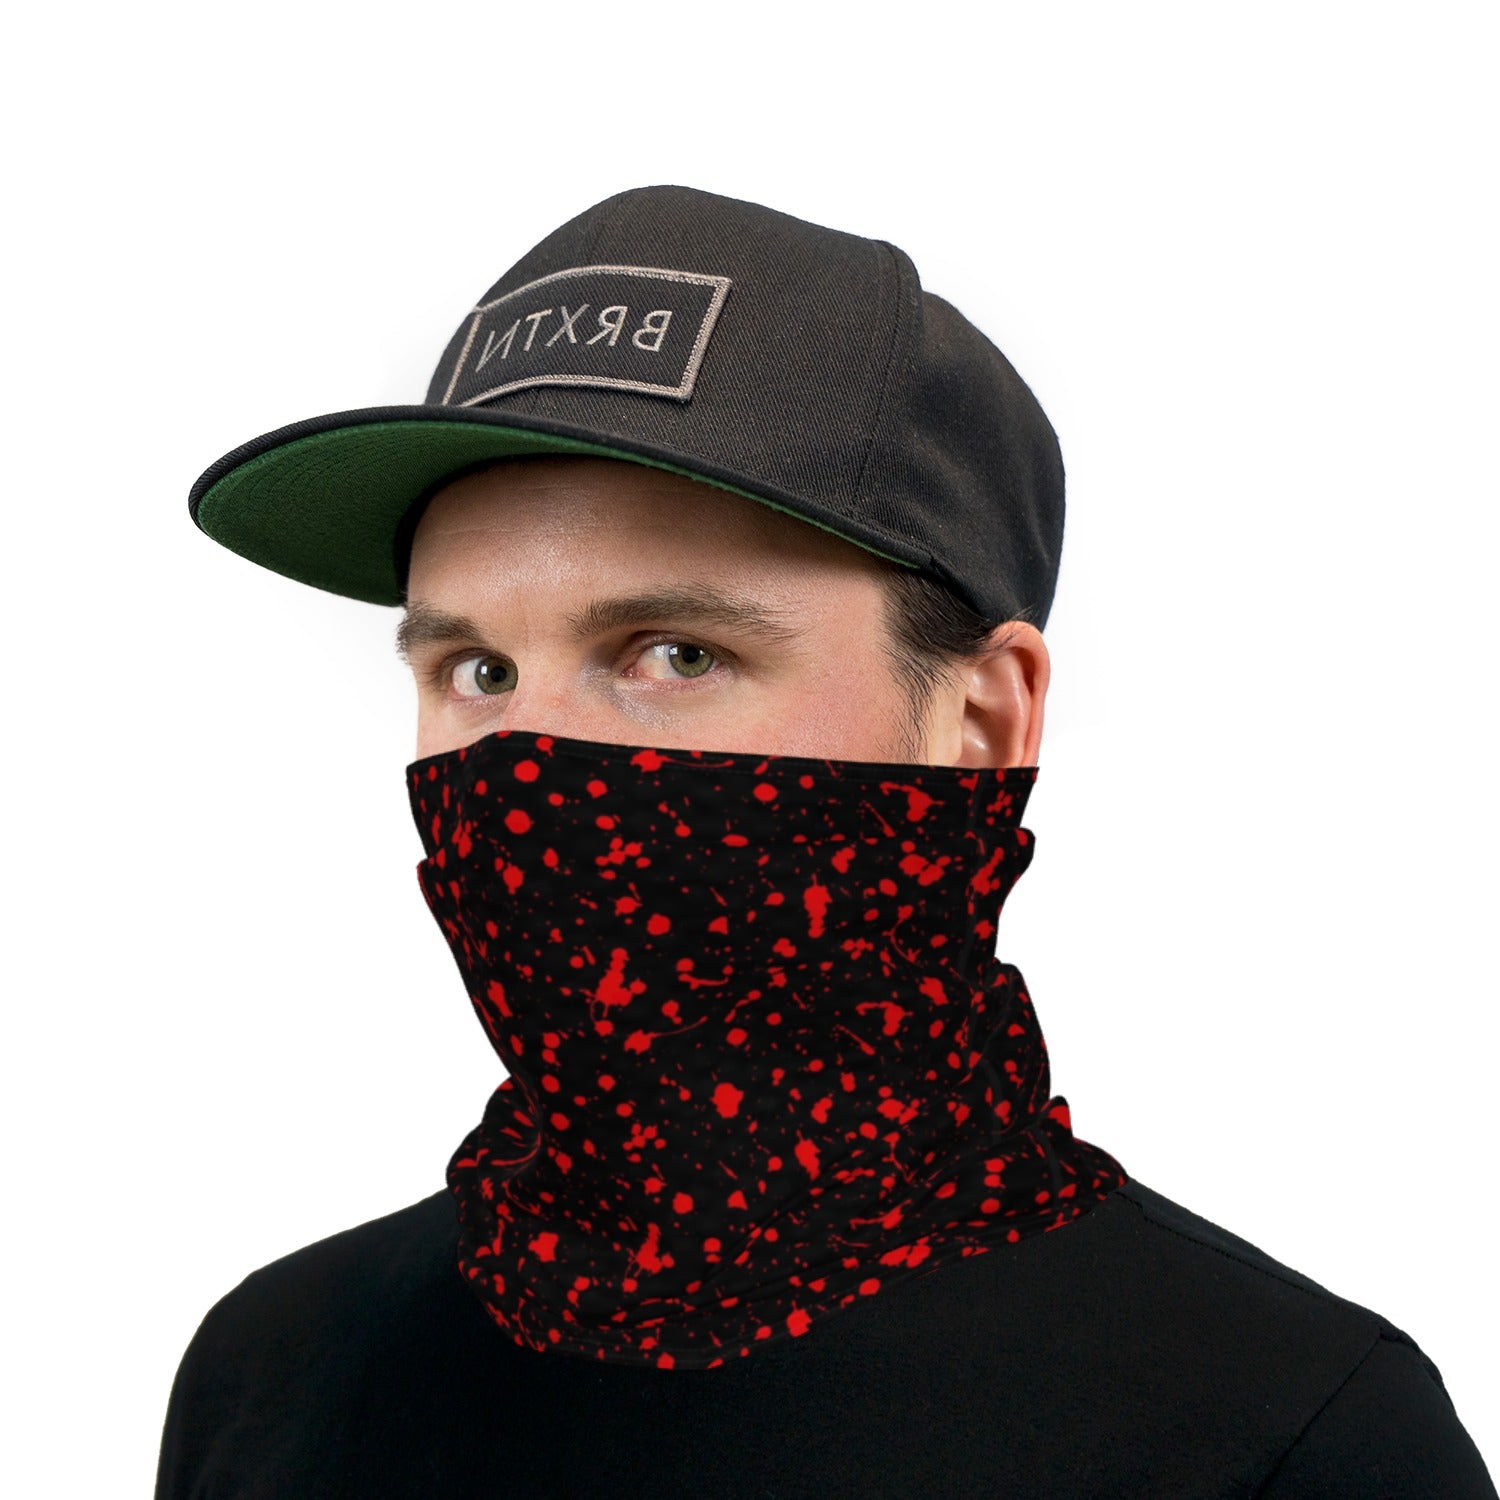 Black and Red Blood Splatter Neck Gaiter Face Mask